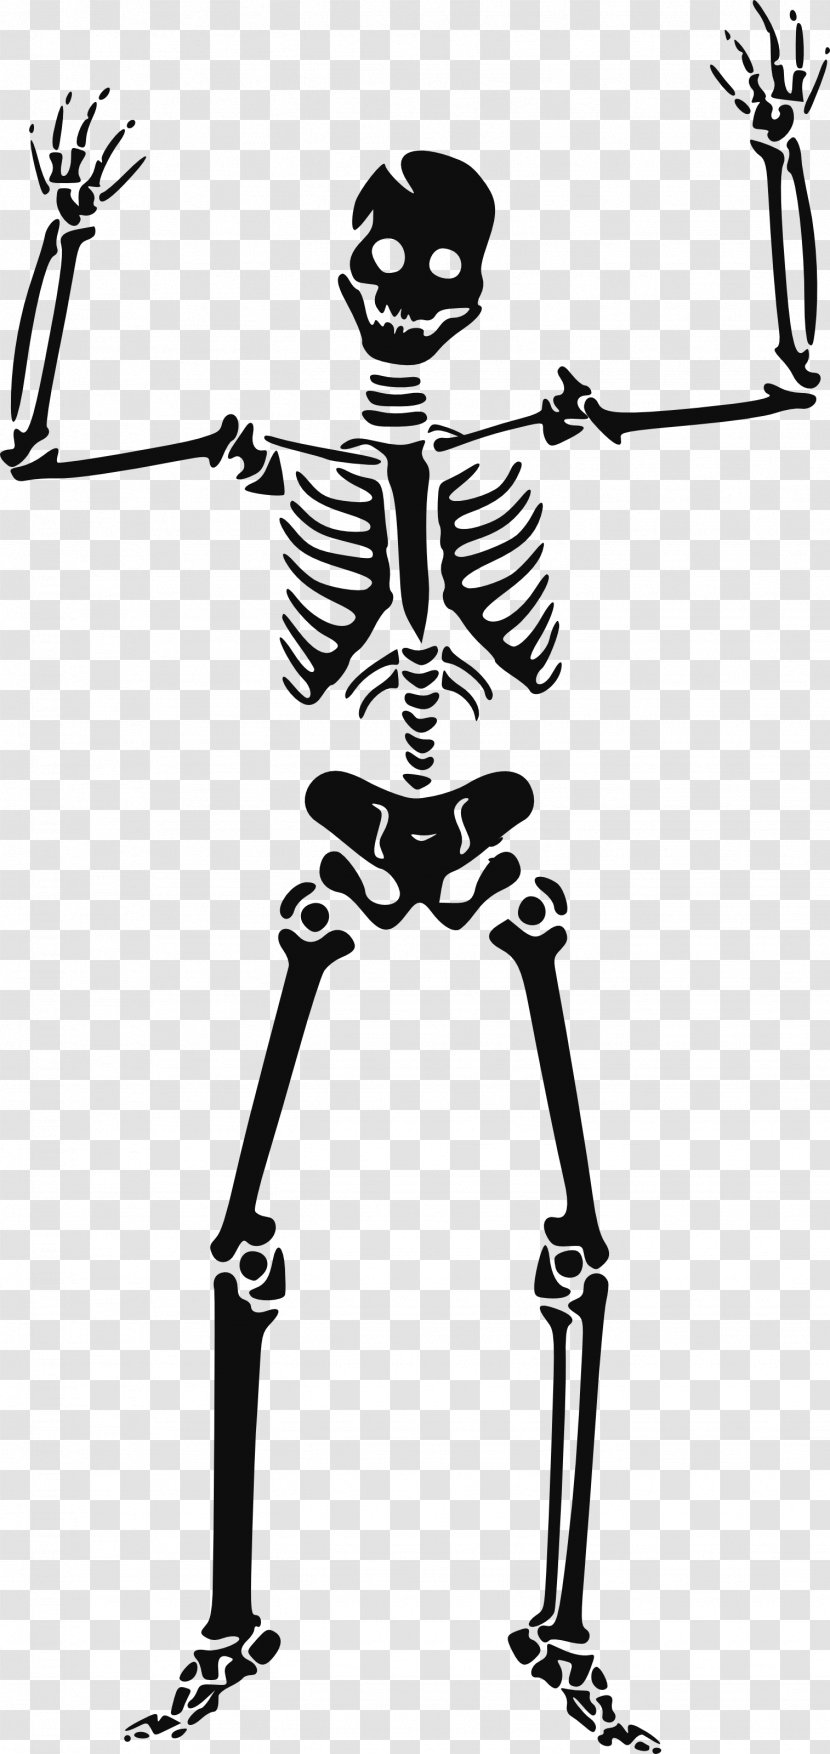 Skeleton Skull Clip Art - Photography - Siluet Image Transparent PNG